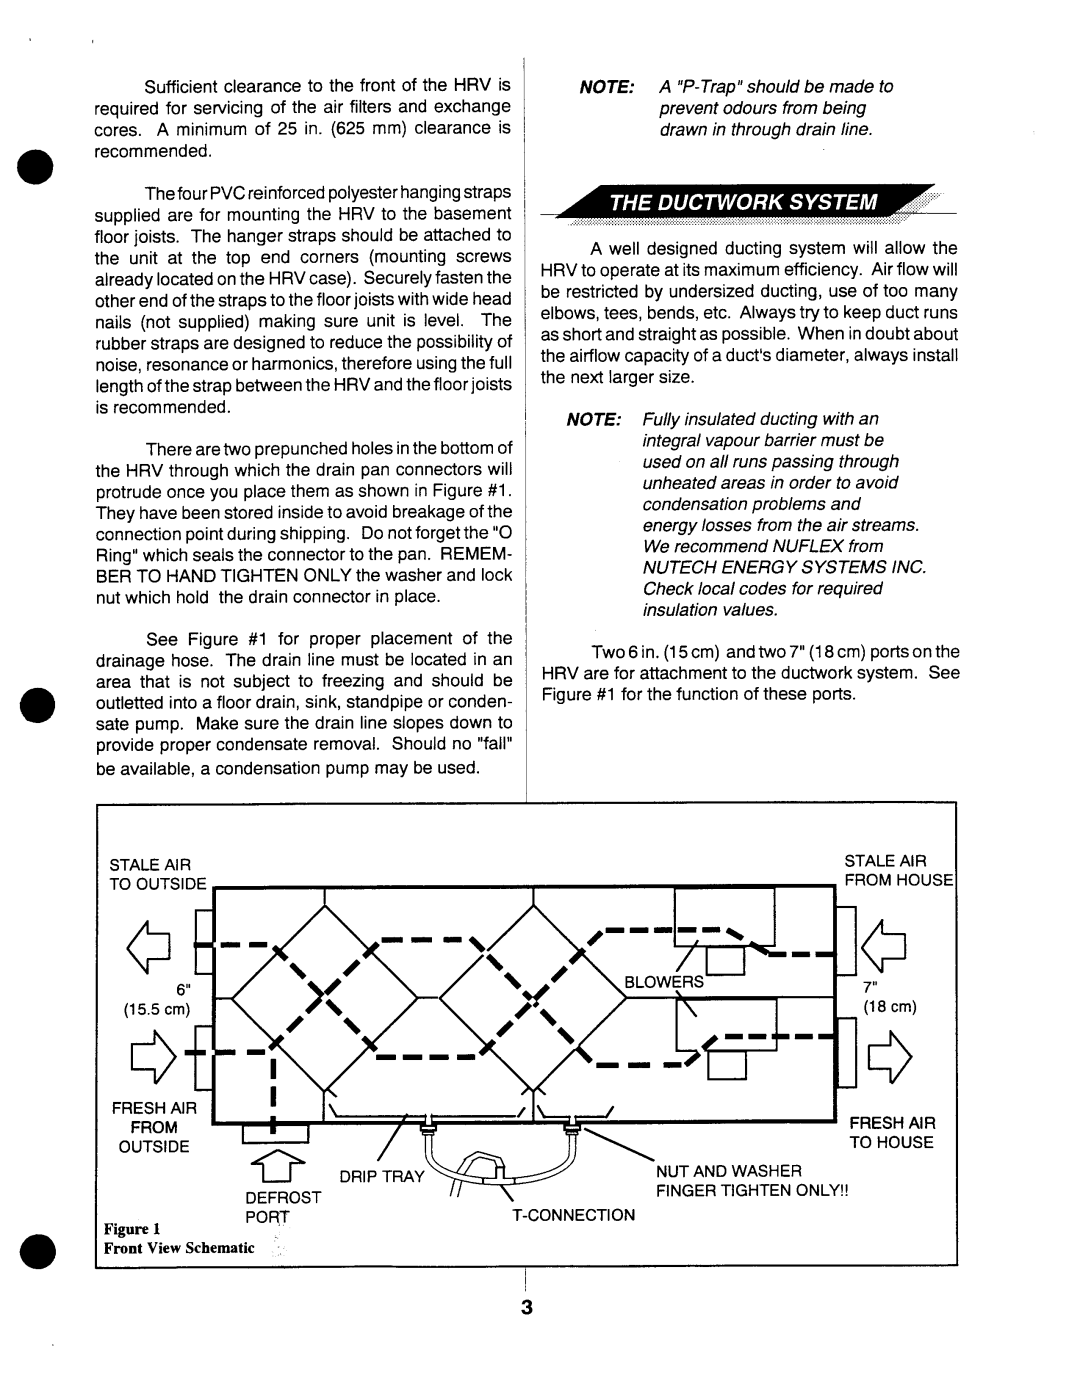 Lifebreath 300DCS, 195DCS manual 